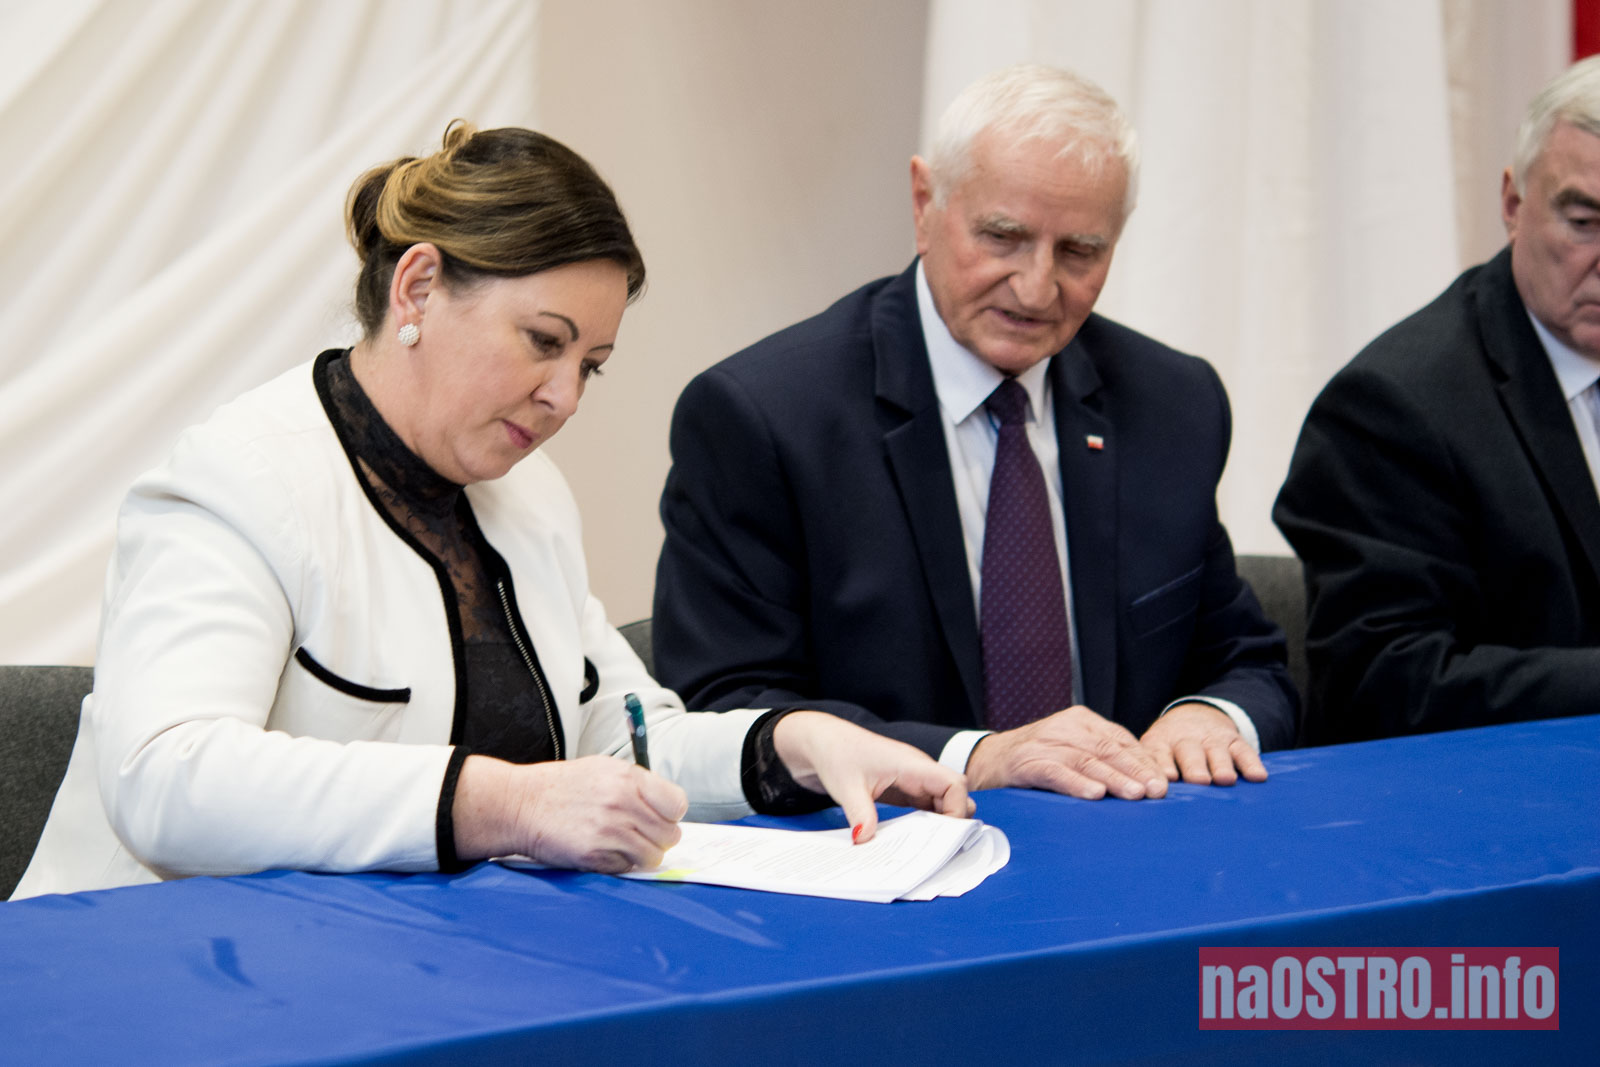 NaOSTROinfo Podpisanie umów na budowę wiejskich świetlic Bałtów 2021-18